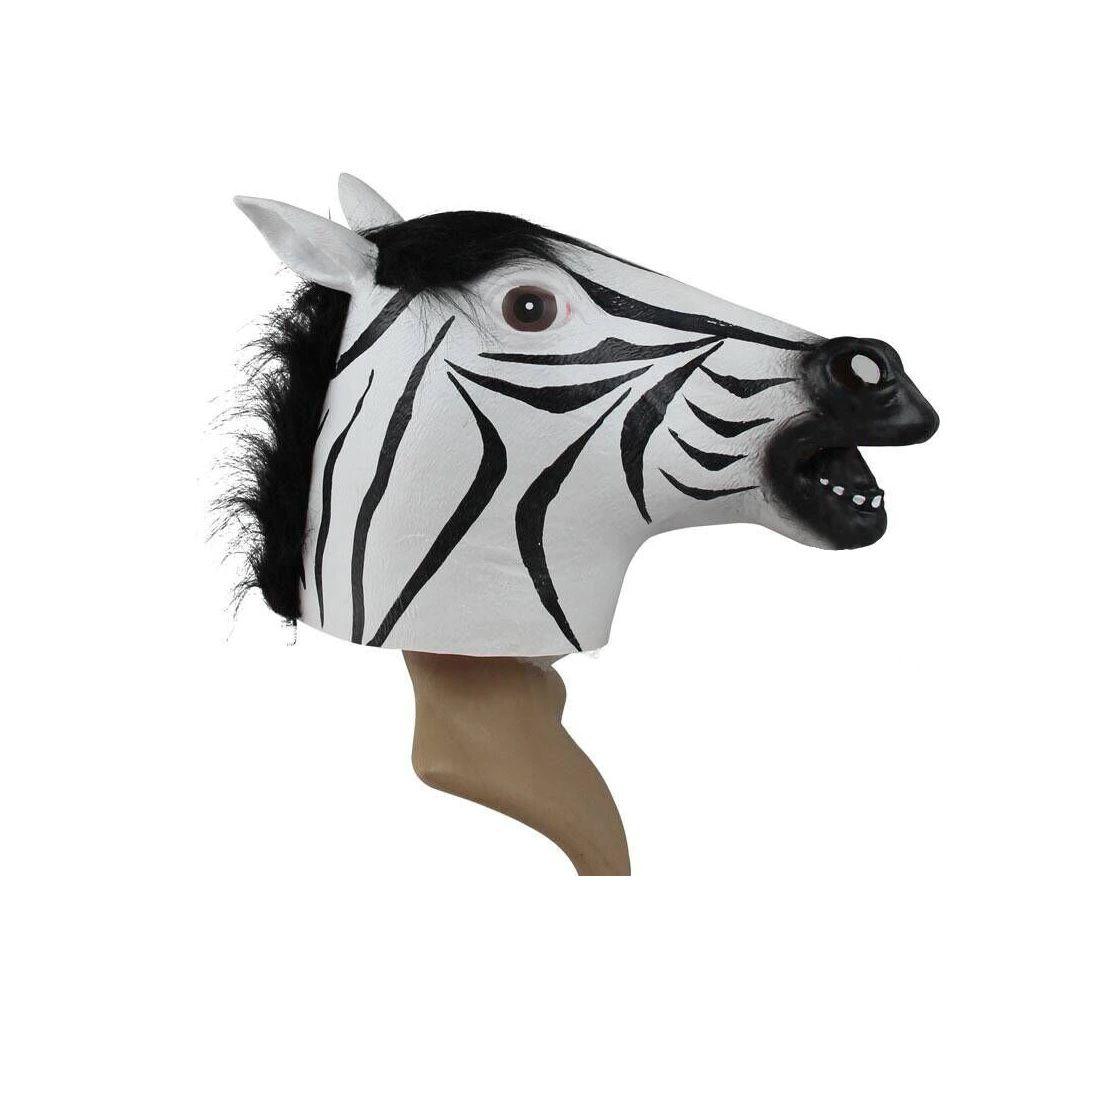 Fantasia Máscara Cabeça de Cavalo Adulto Halloween